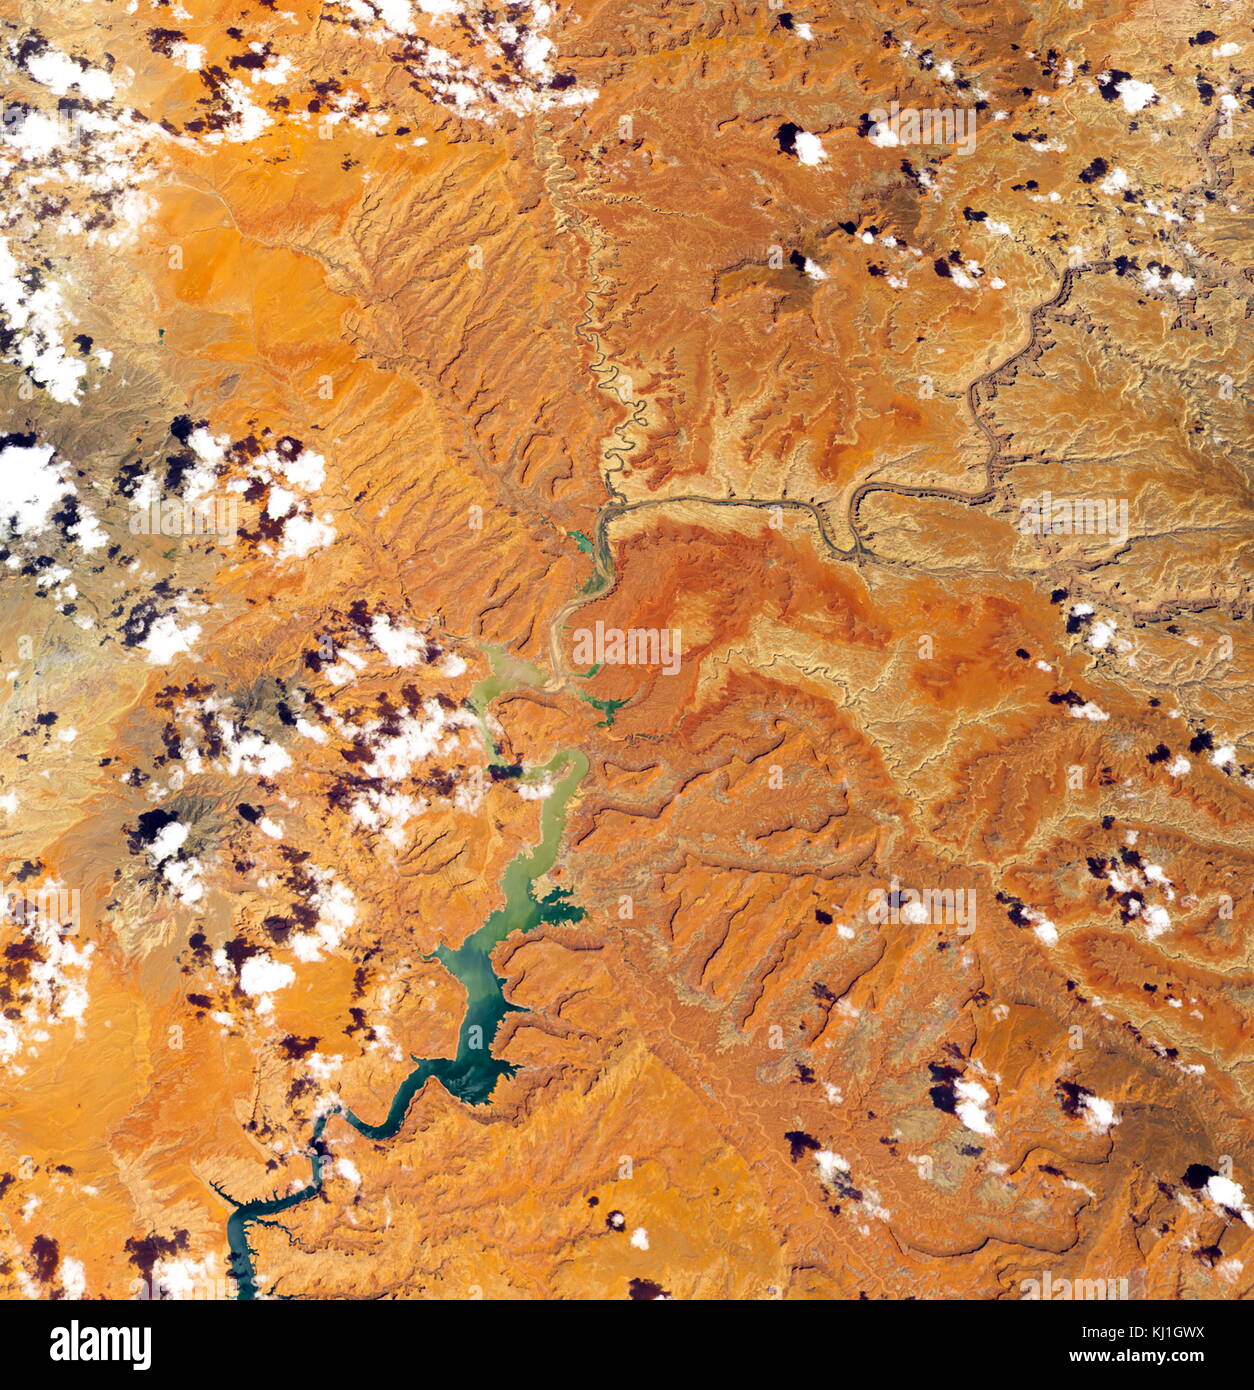 Lake Powell, est un réservoir sur la rivière Colorado, chevauchant la frontière entre l'Utah et l'Arizona (la plupart d'elle, avec pont en arc-en-ciel, est dans l'Utah). C'est le deuxième plus grand réservoir de capacité maximale de l'eau aux États-Unis derrière le Lac Mead. Image satellite, prises en 2016 Banque D'Images